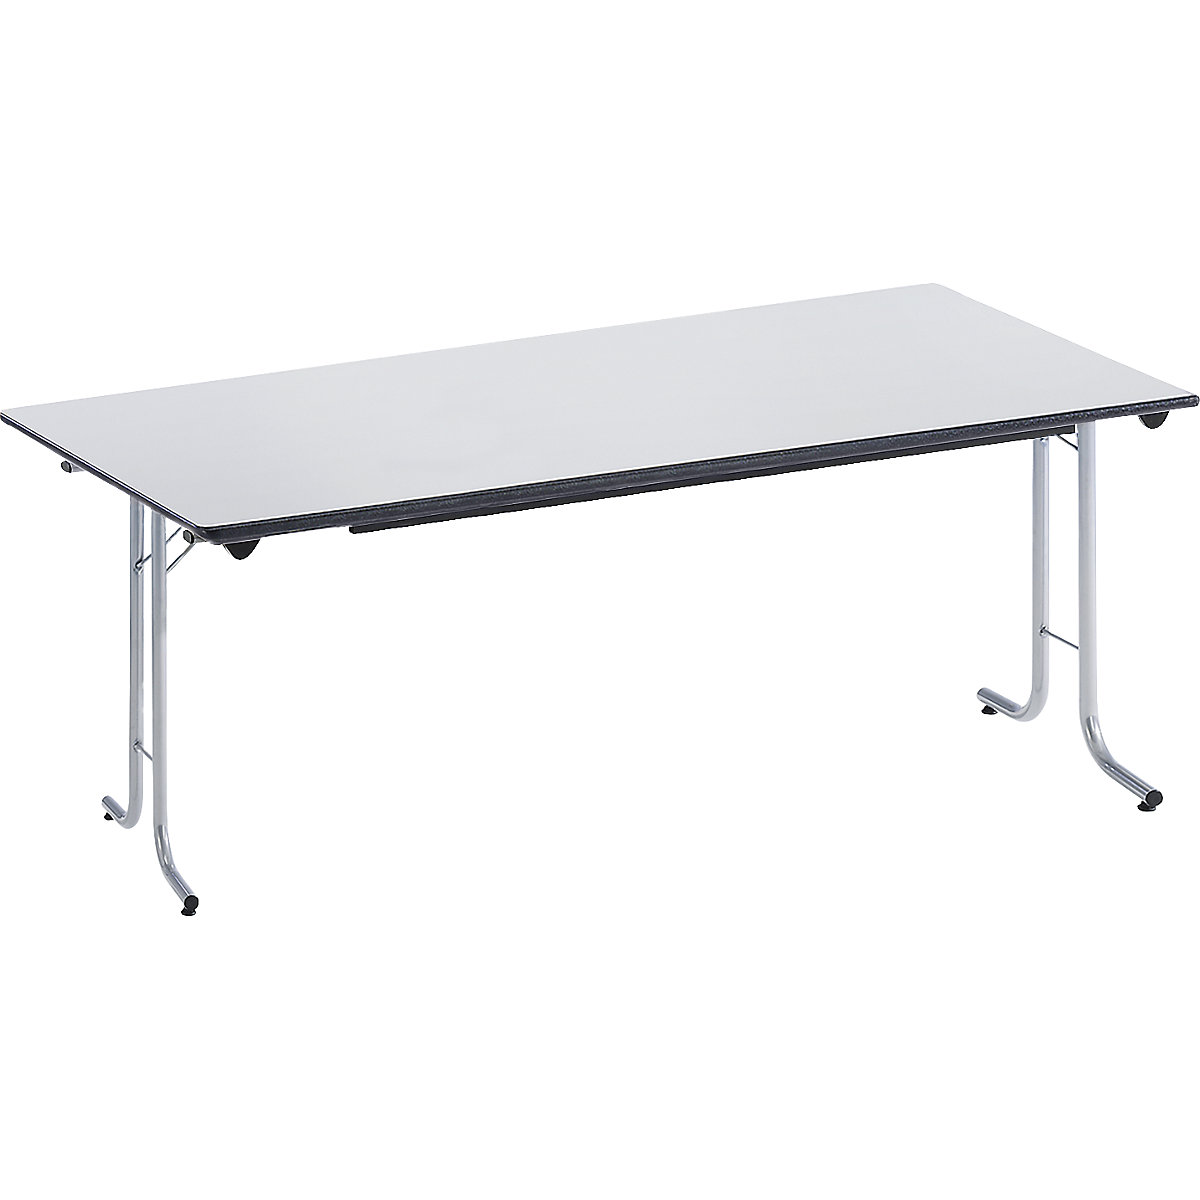 Inklapbare tafel, met afgeronde randen, tafelpoten van staalbuis, bladvorm rechthoekig, 1600 x 700 mm, frame aluminiumkleurig, blad lichtgrijs-14